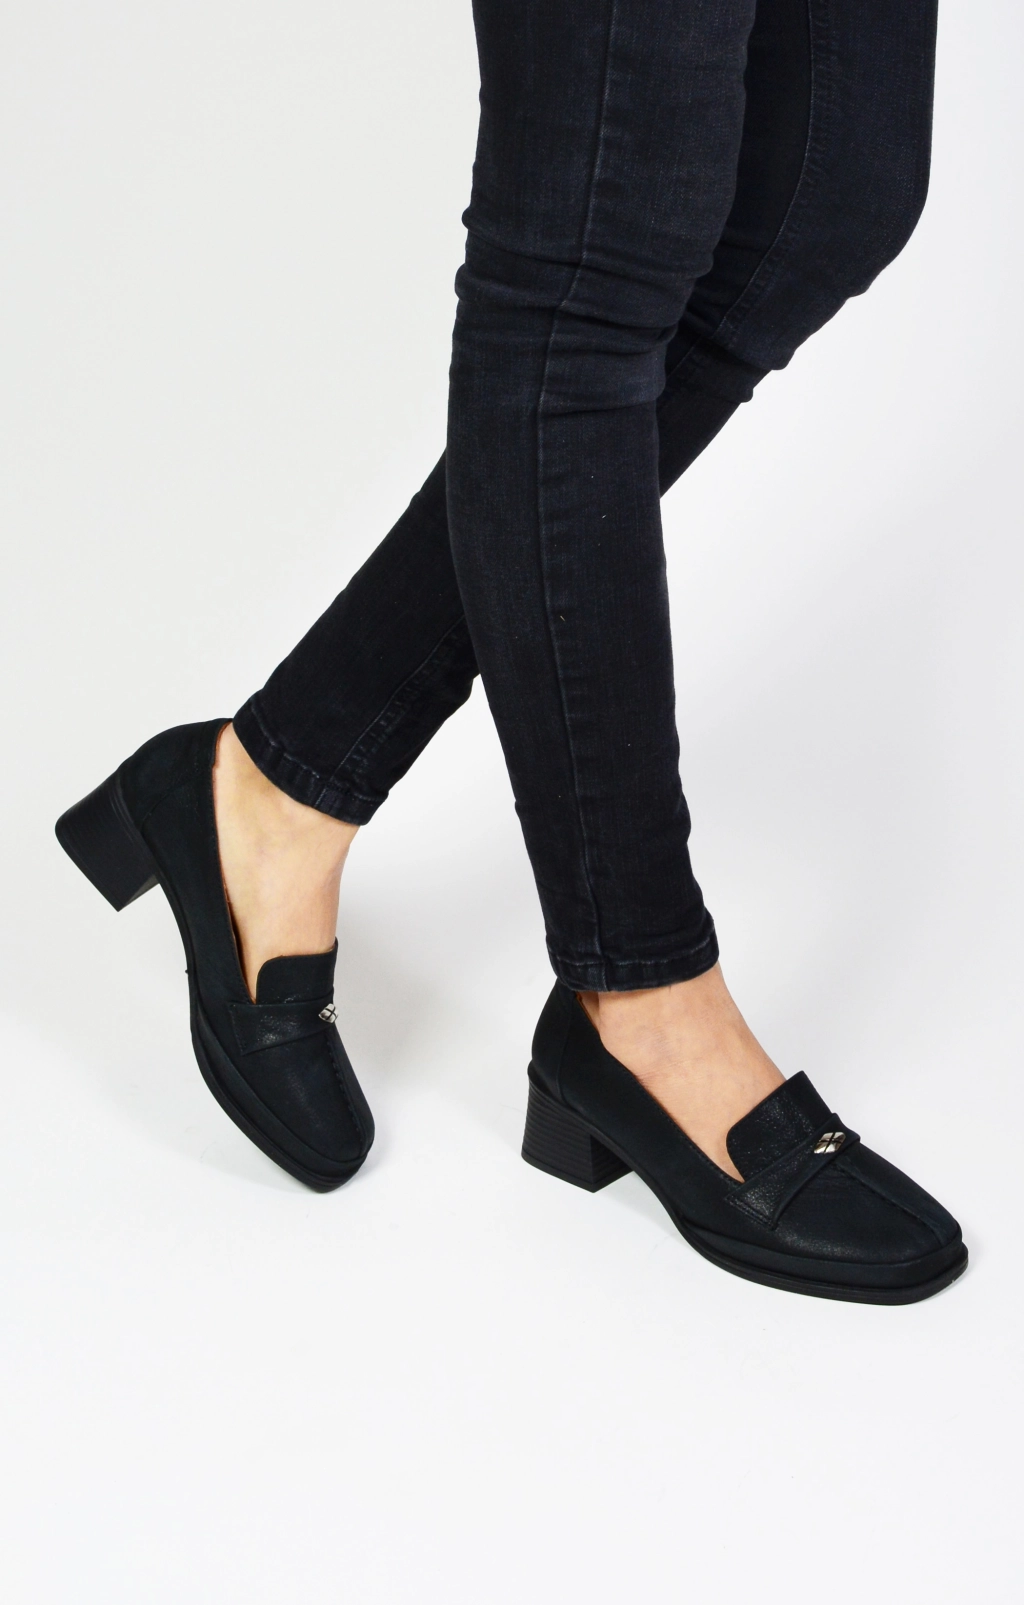 Дамски офис обувки от естествена кожа-сатен в черен цвят